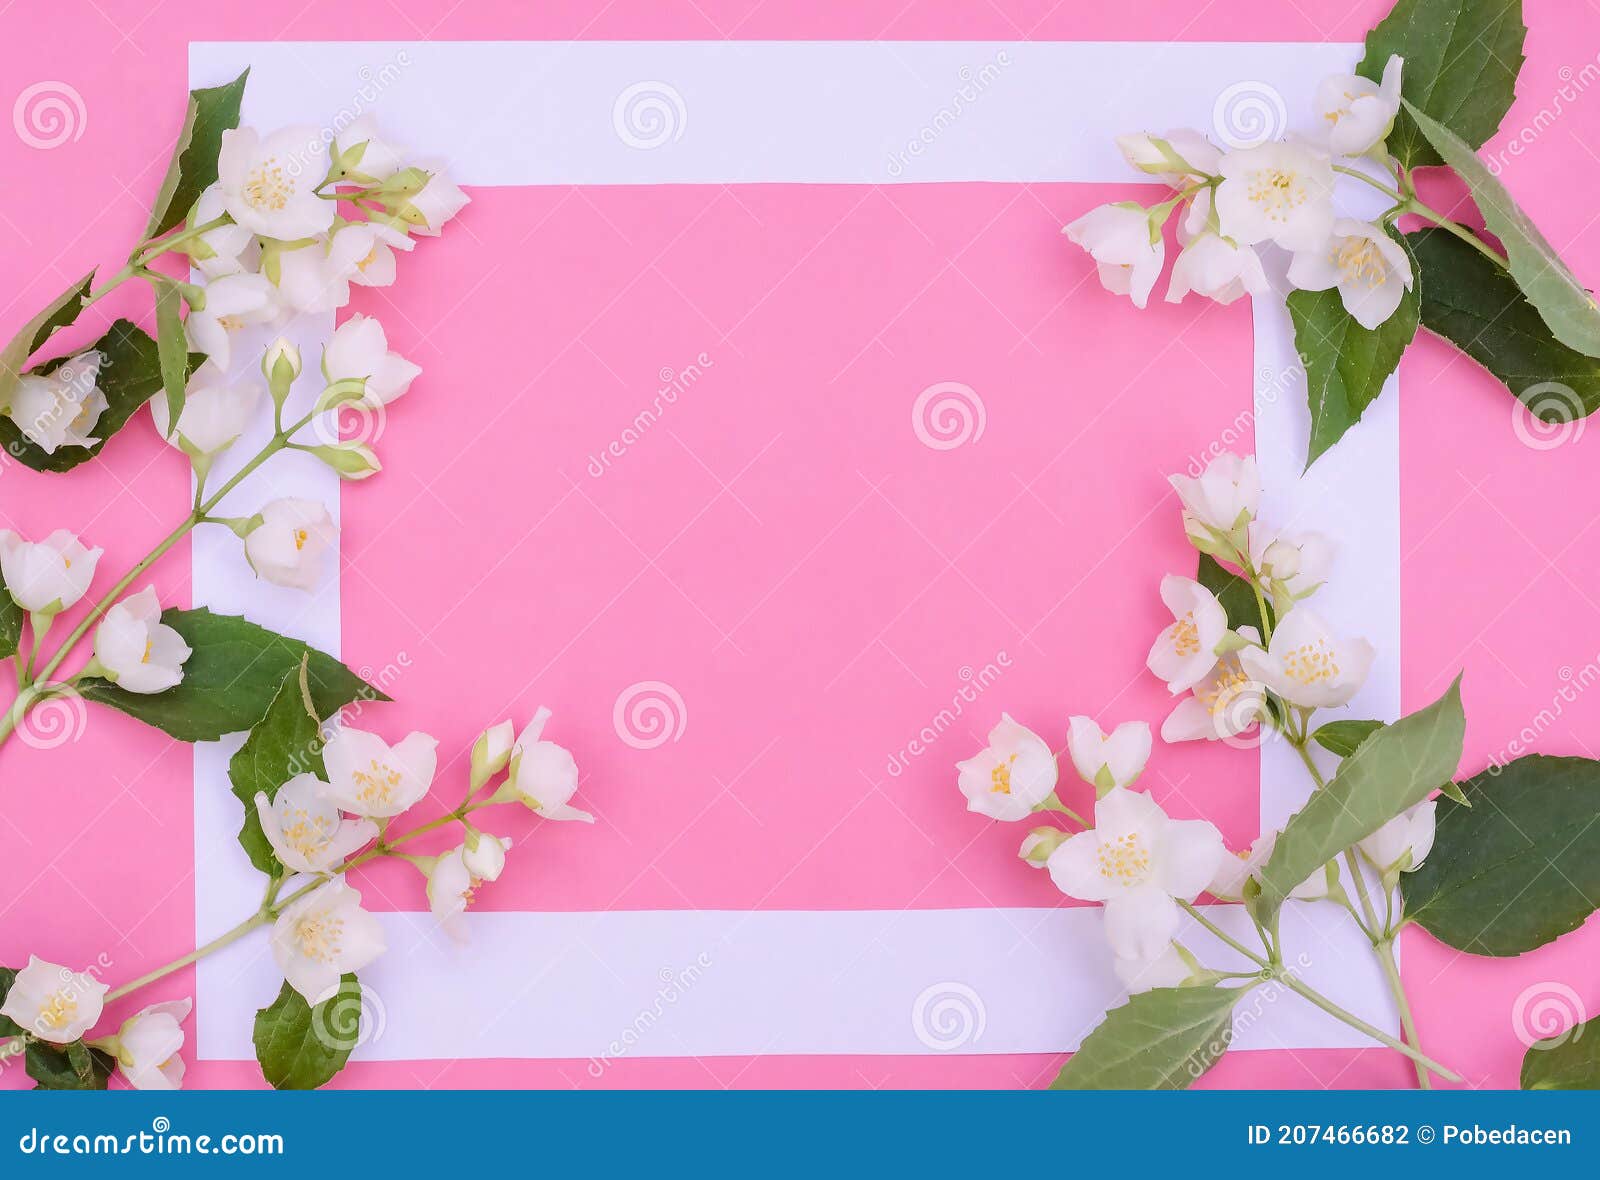 Saudação Do Plano De Fundo Do Cartão Jasmim Flores Em Um Plano De Fundo  Cor-de-rosa Com Espaço De Cópia Foto de Stock - Imagem de colheita, alto:  207466682